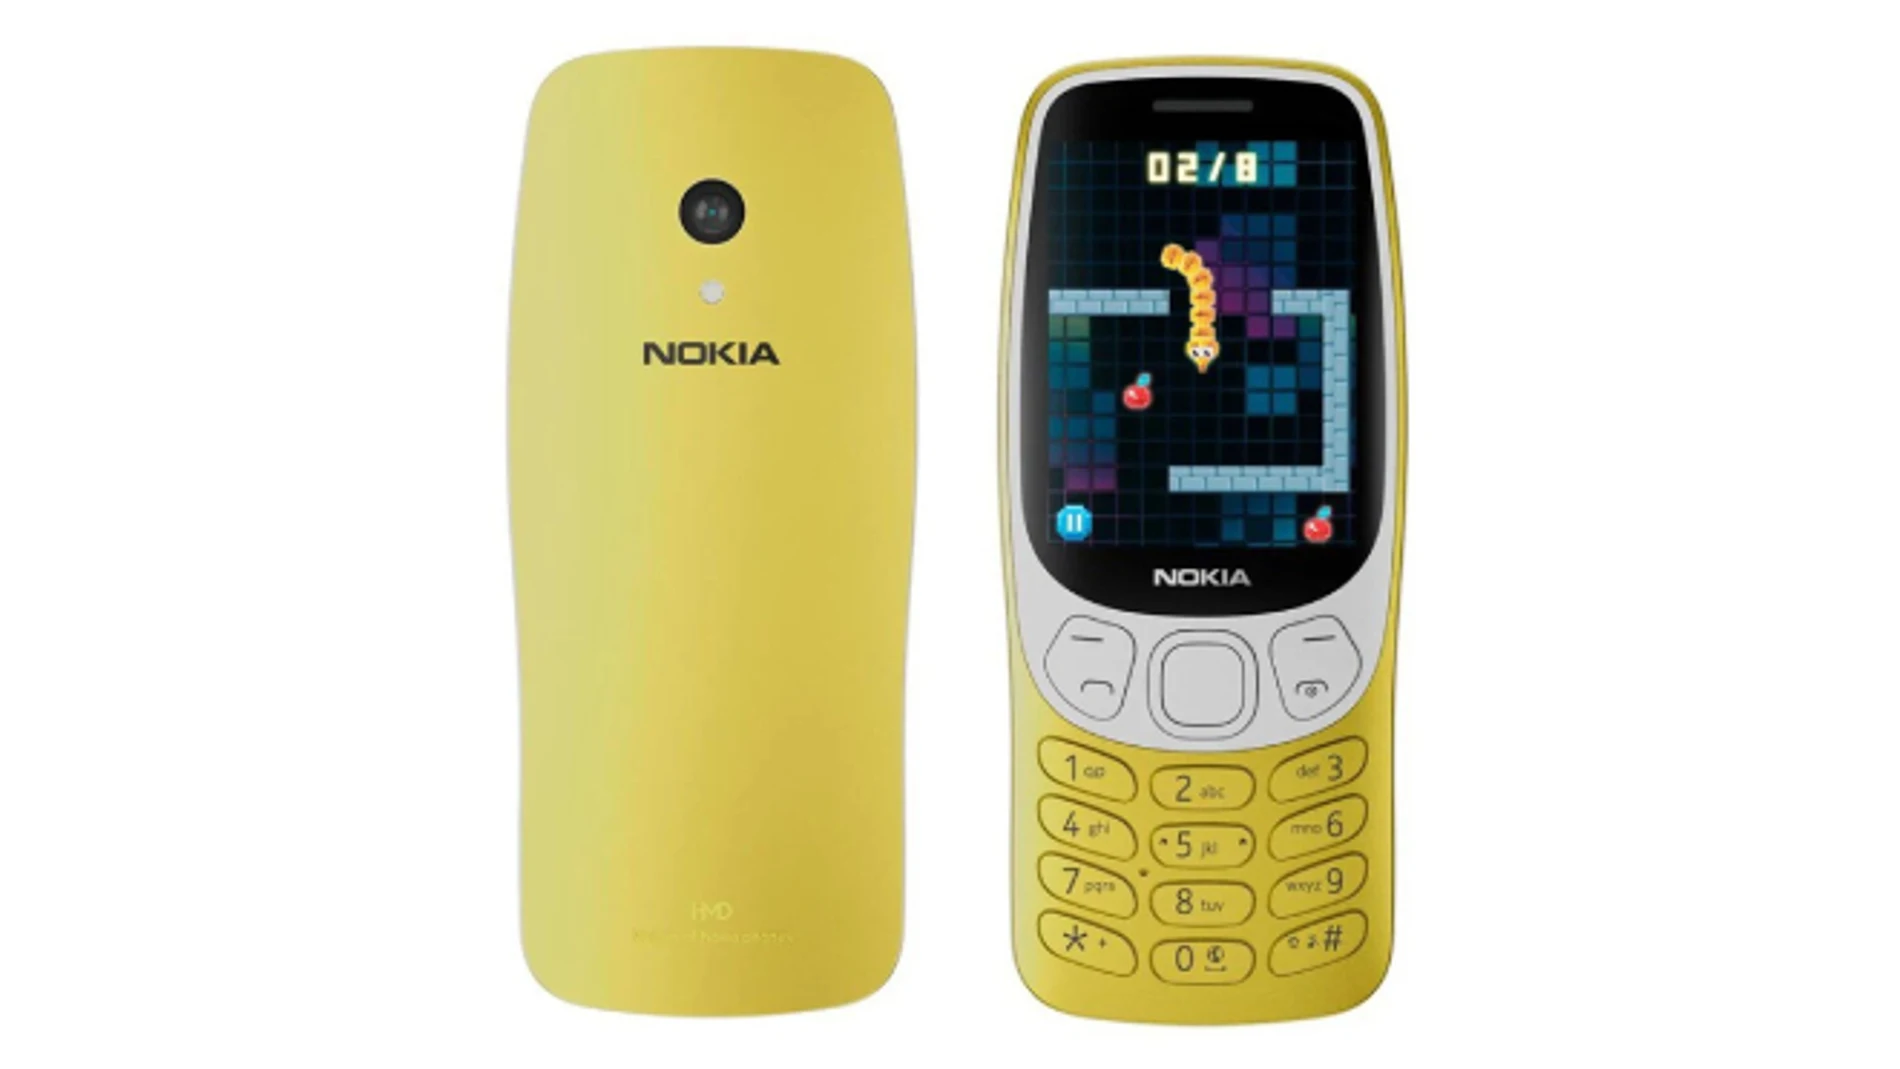 Regresa el Nokia 3210, uno de los móviles más míticos de los 90 y 2000.